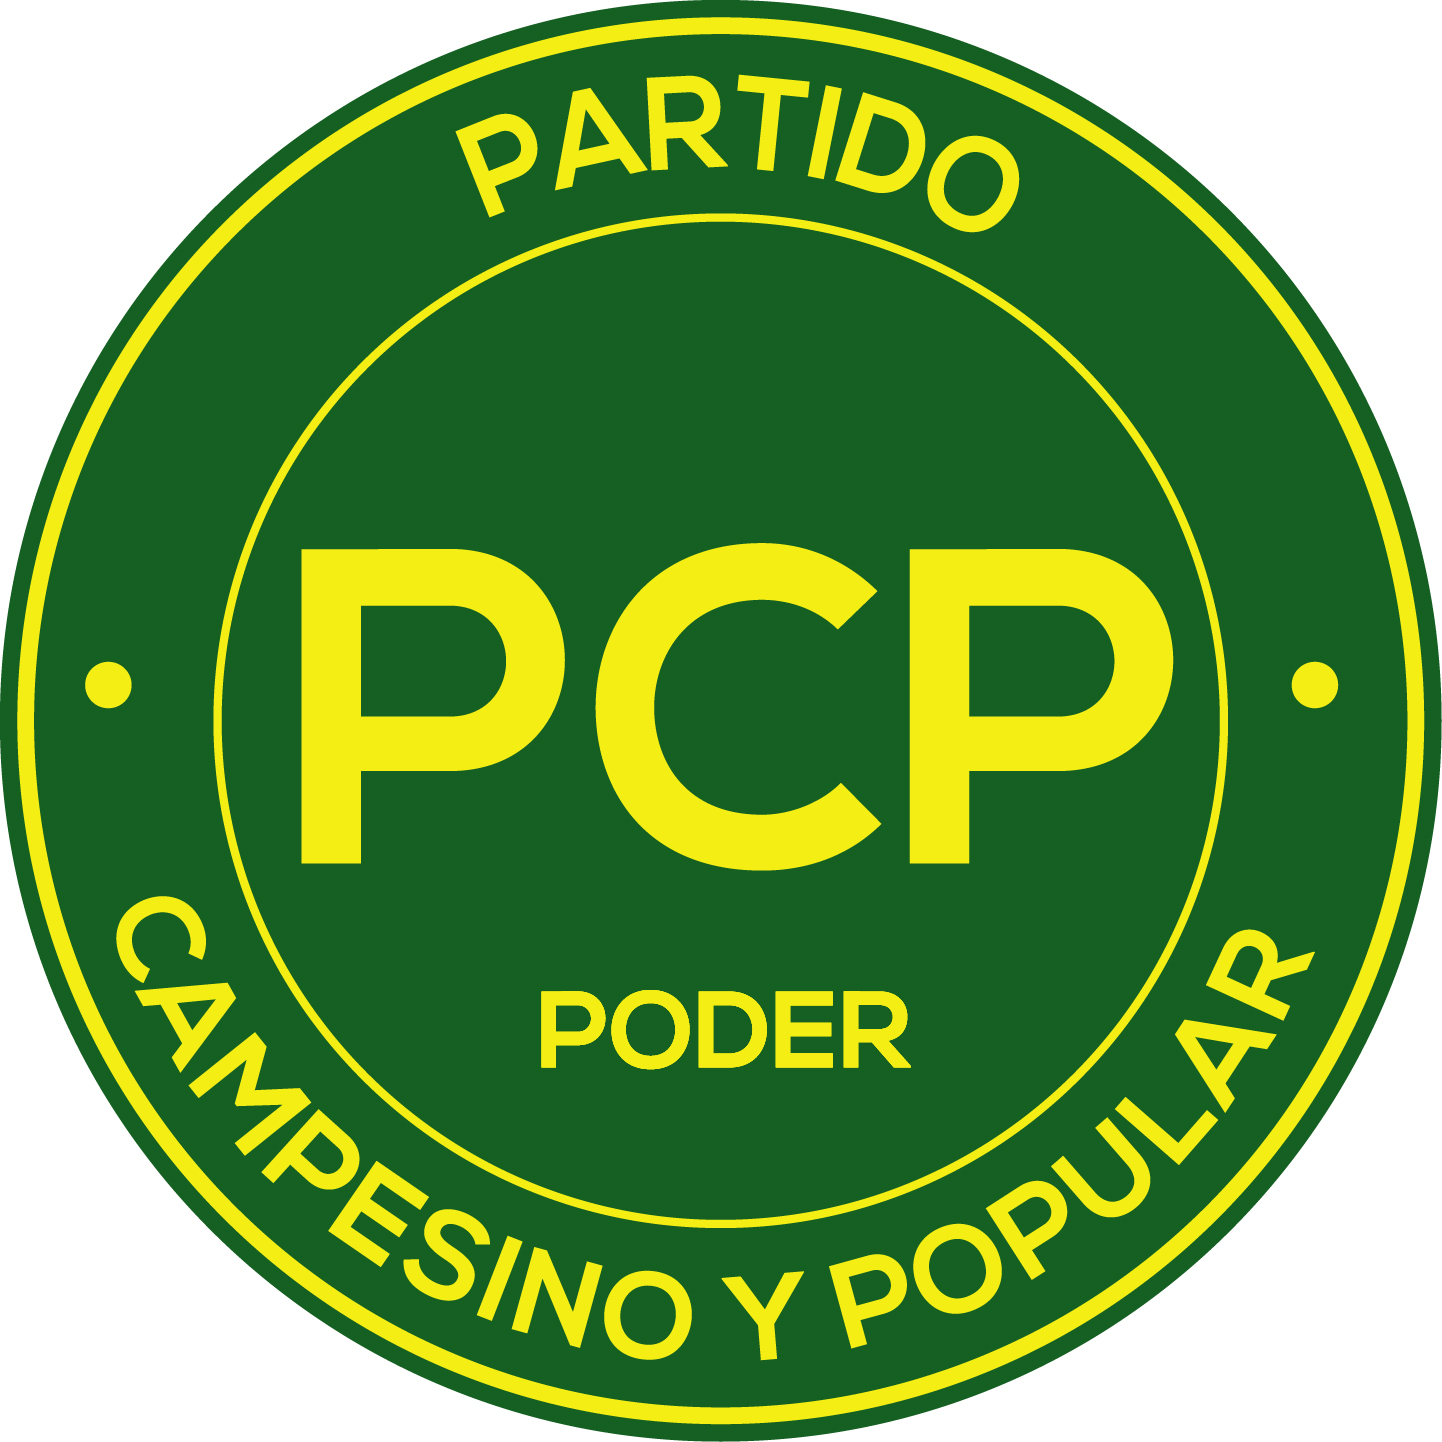 13 PCP